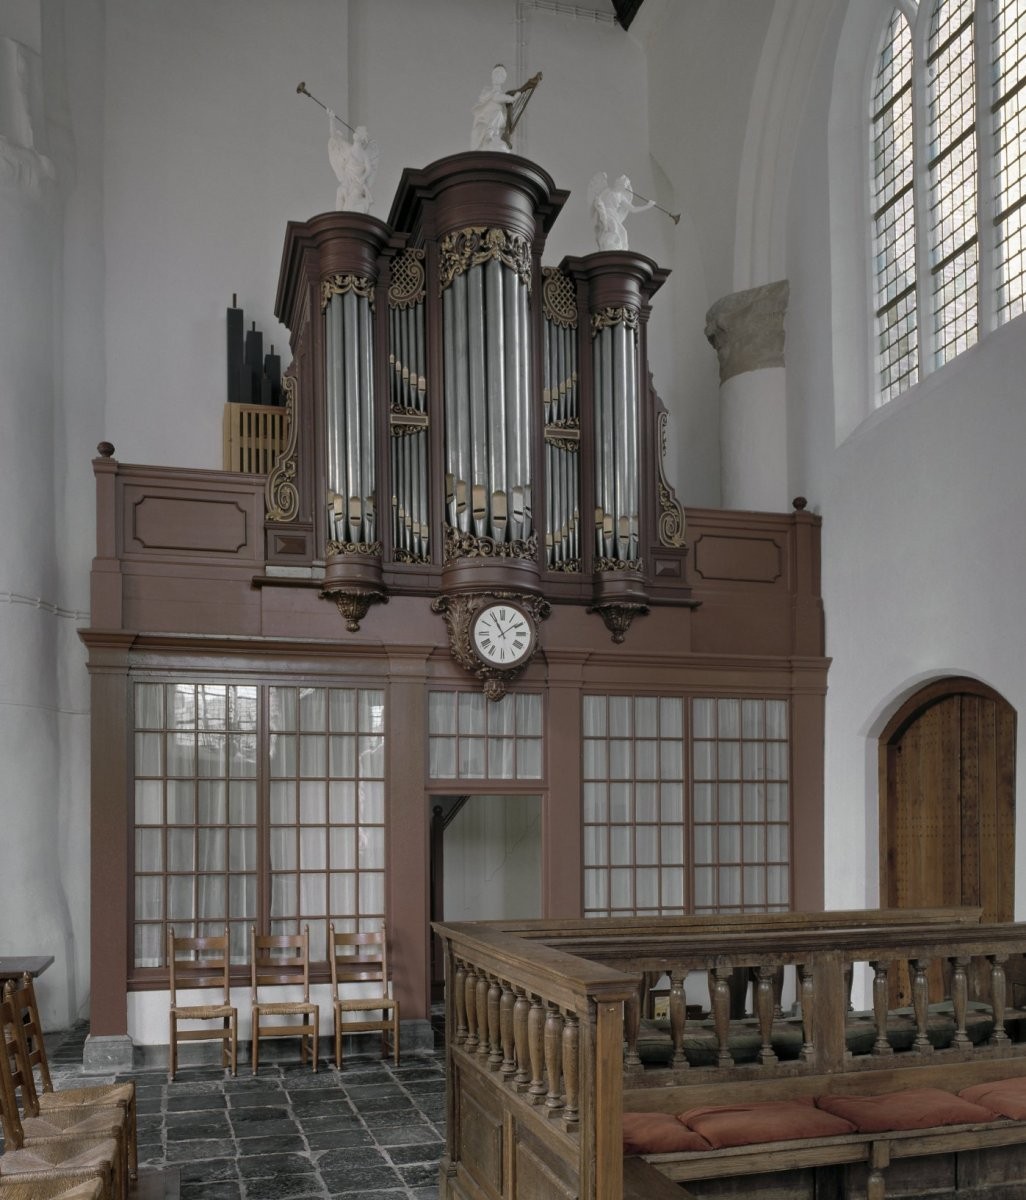 Orgel Kleine kerk Veere.jpg